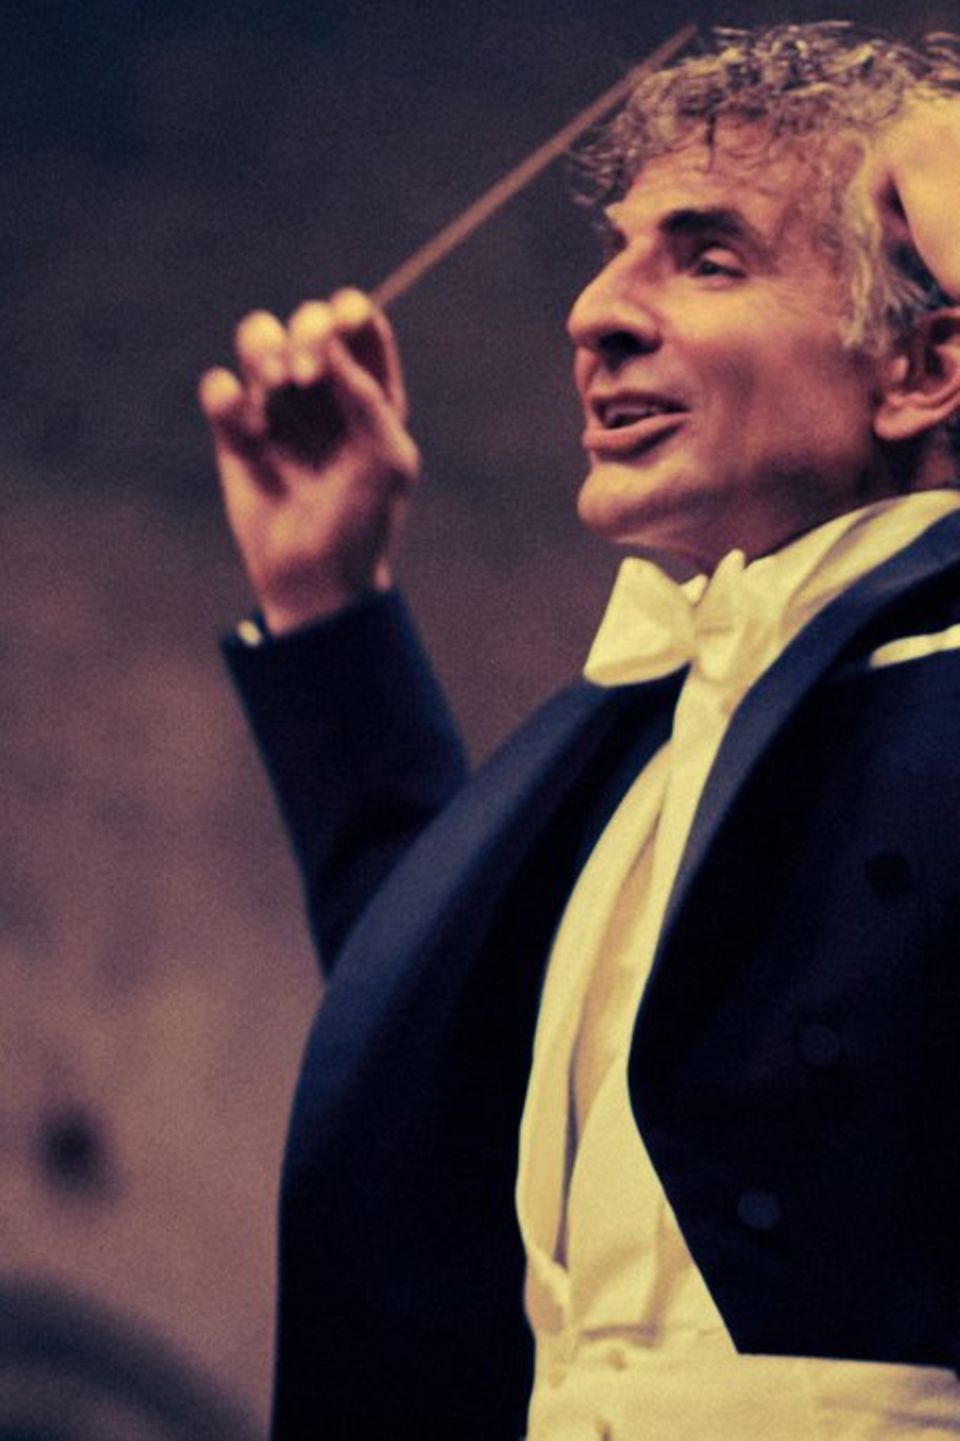 Bradley Cooper als leidenschaftlicher Dirigent Leonard Bernstein.